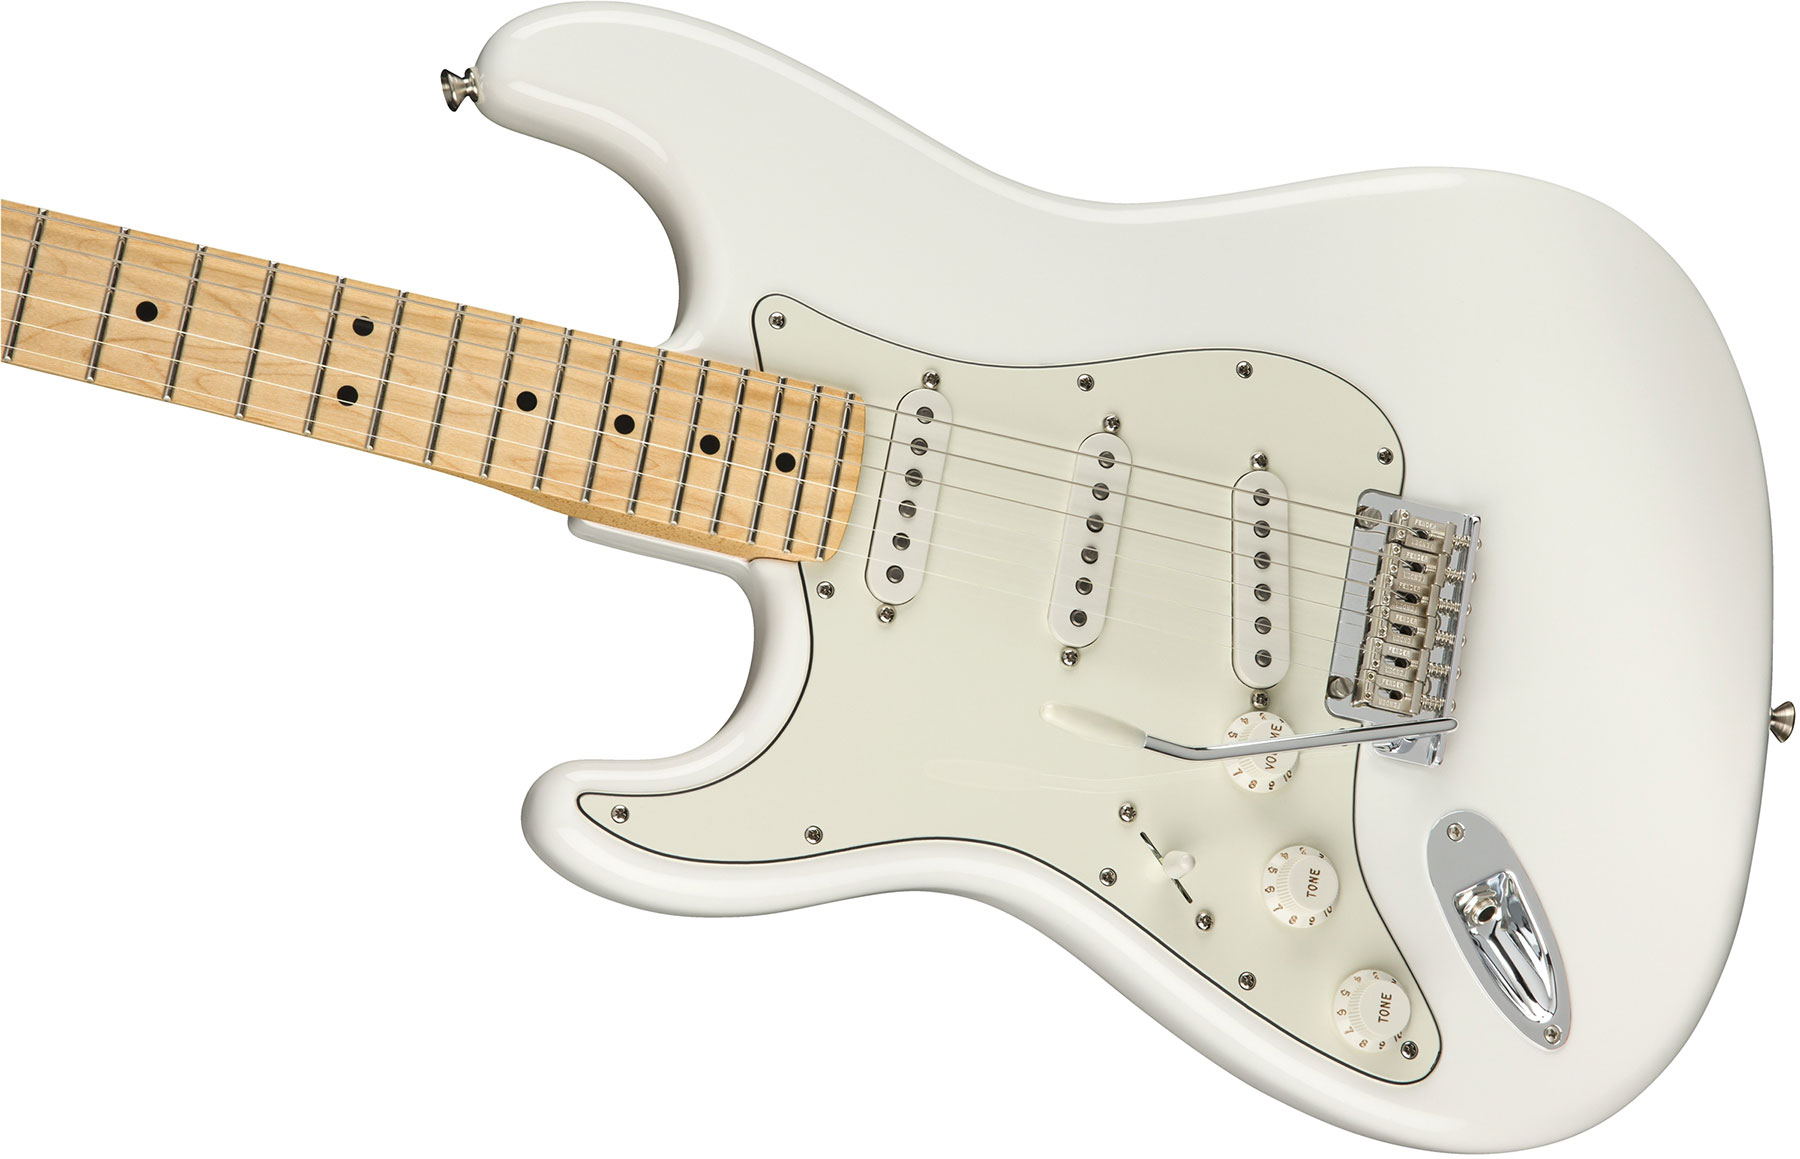 Fender Strat Player Lh Gaucher Mex Sss Mn - Polar White - Linkshandige elektrische gitaar - Variation 2